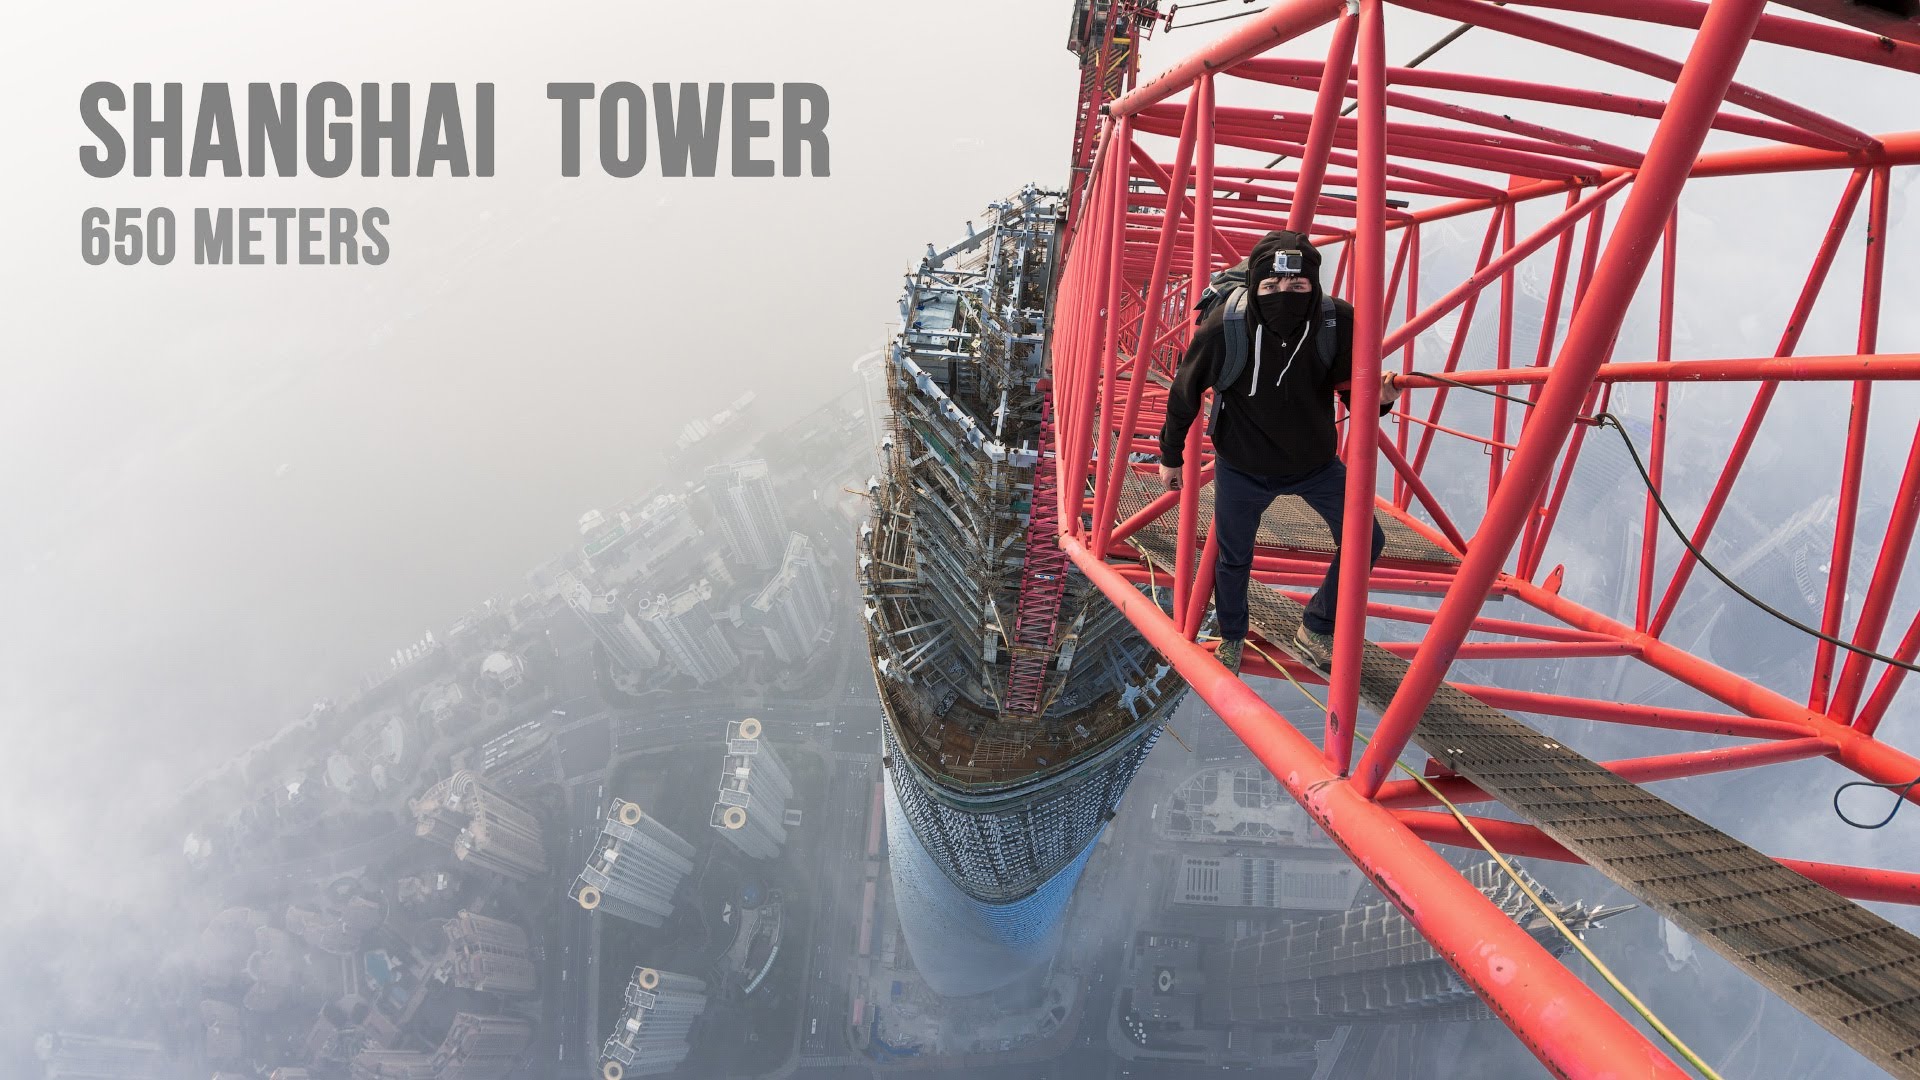 Jeżeli masz lęk wysokości to nawet tego nie oglądaj – Rosjanie na Shanghai Tower